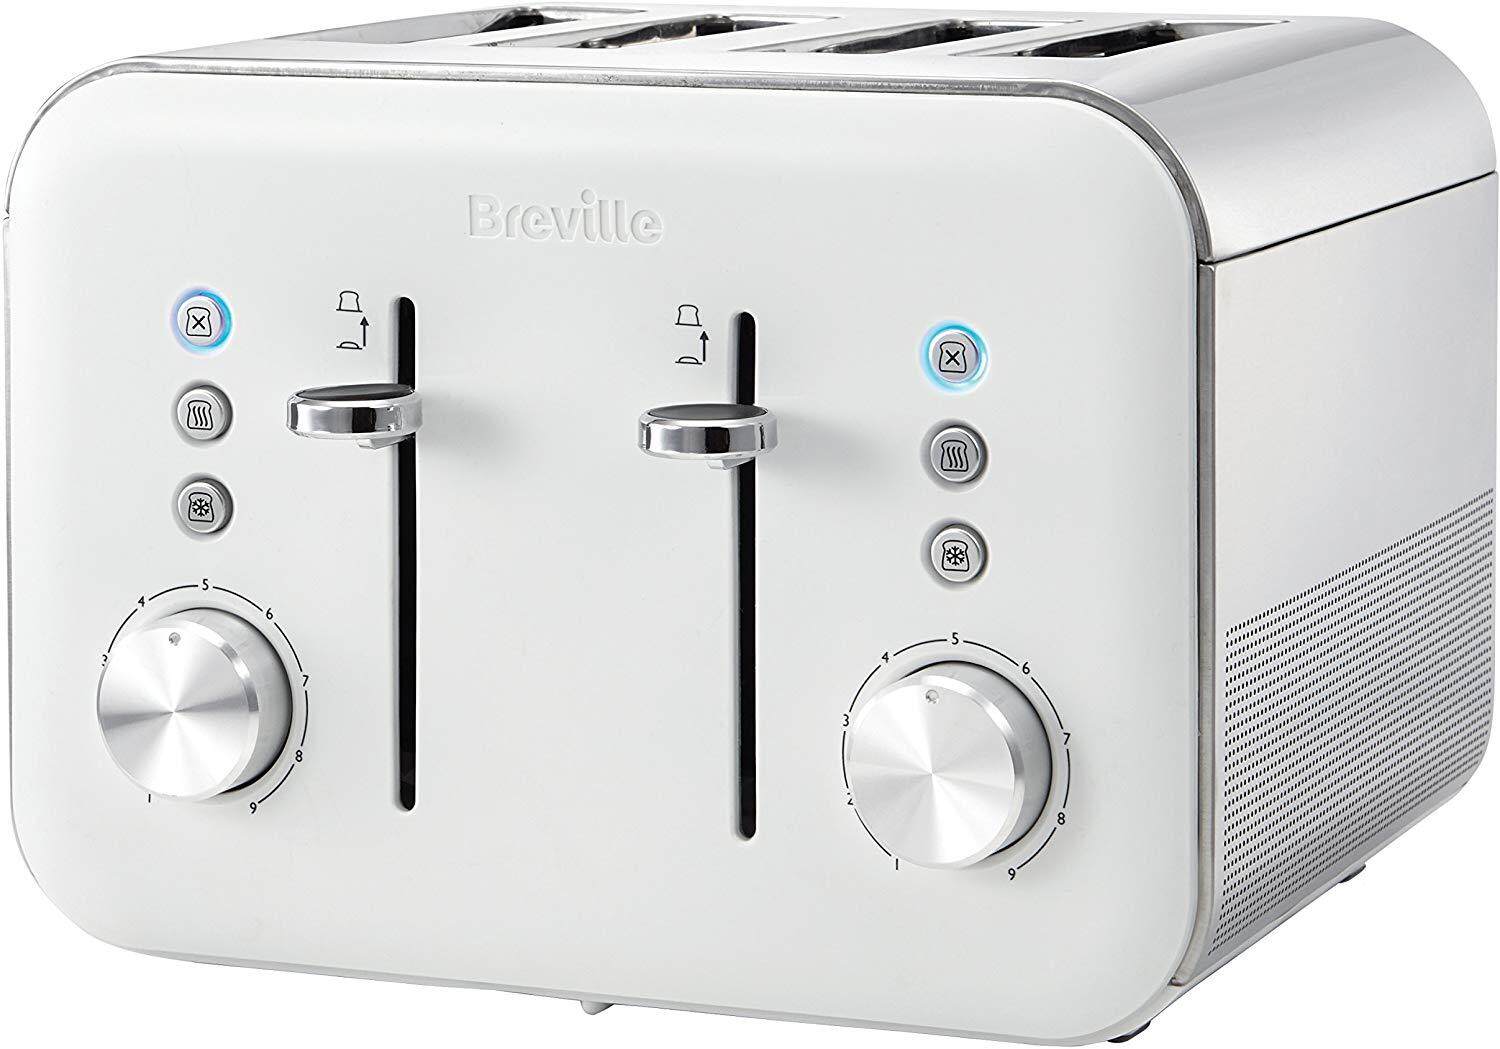 การใช้งาน  สมุทรสาคร เครื่องปิ้งขนมปัง Breville VTT687 High Gloss Toaster  4 Slice  with Variable Browning & High Lift  White